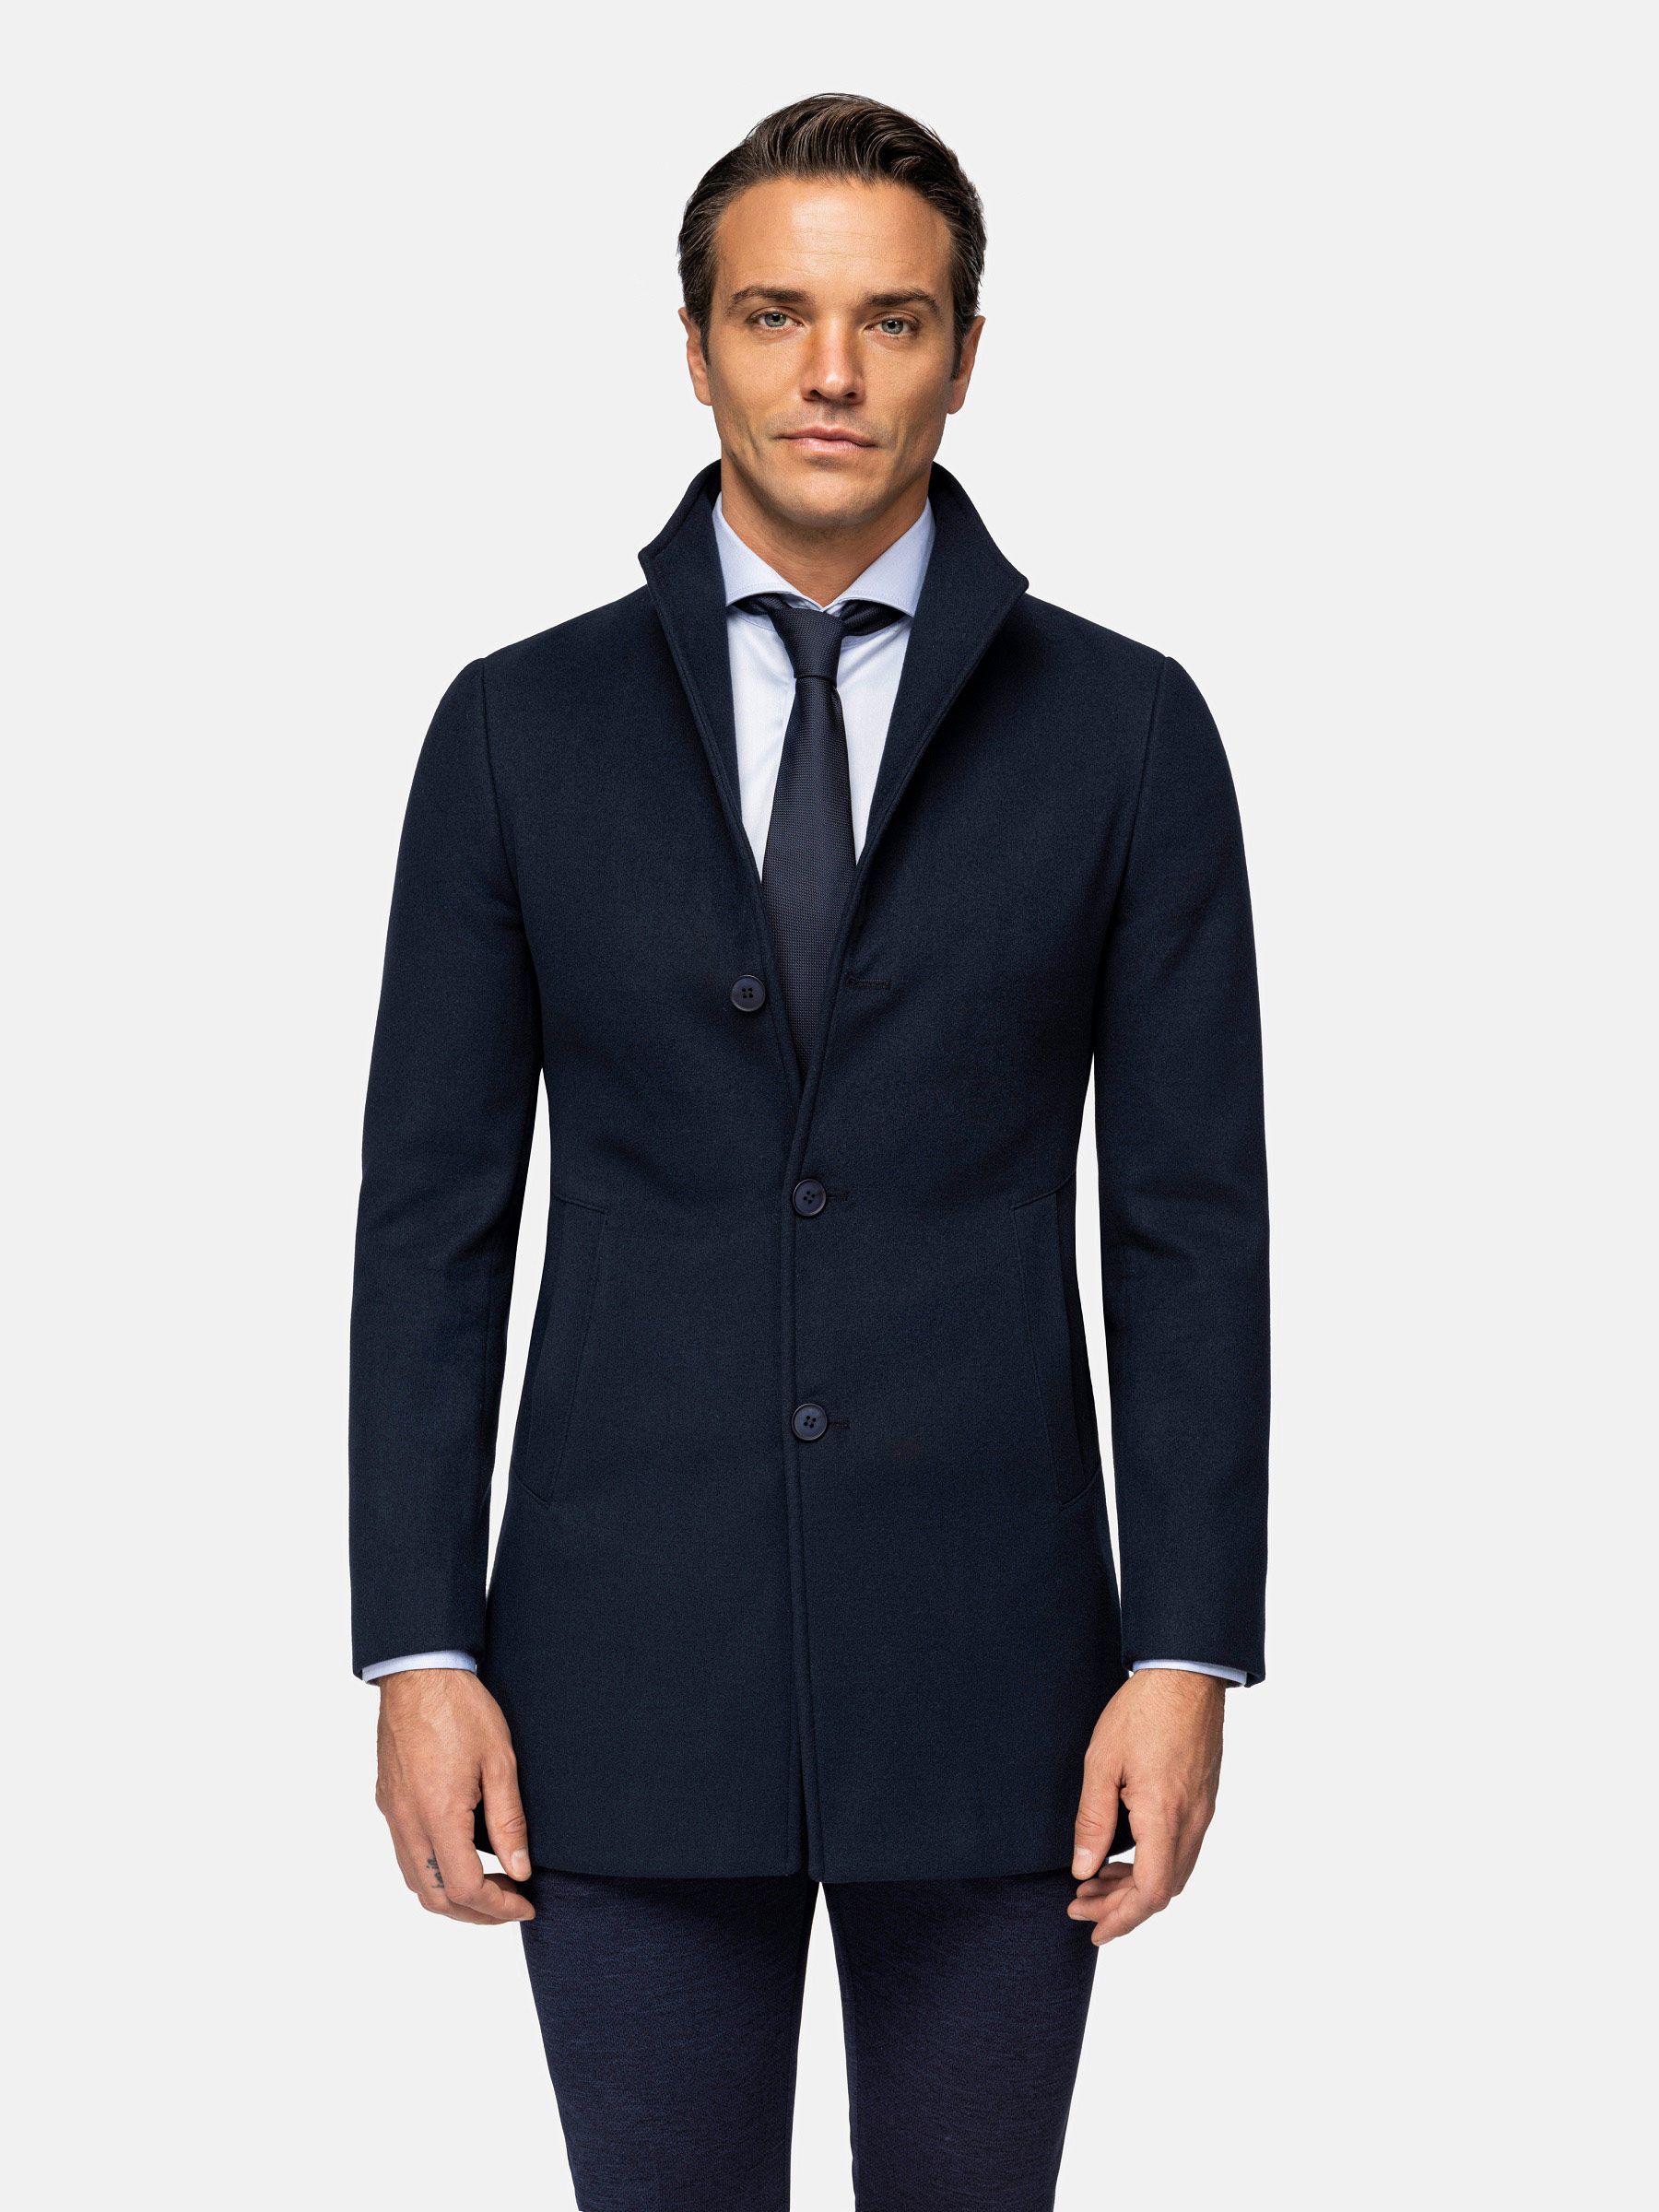 Men's trenchcoat - Widespread notch collar - Dark navy coat